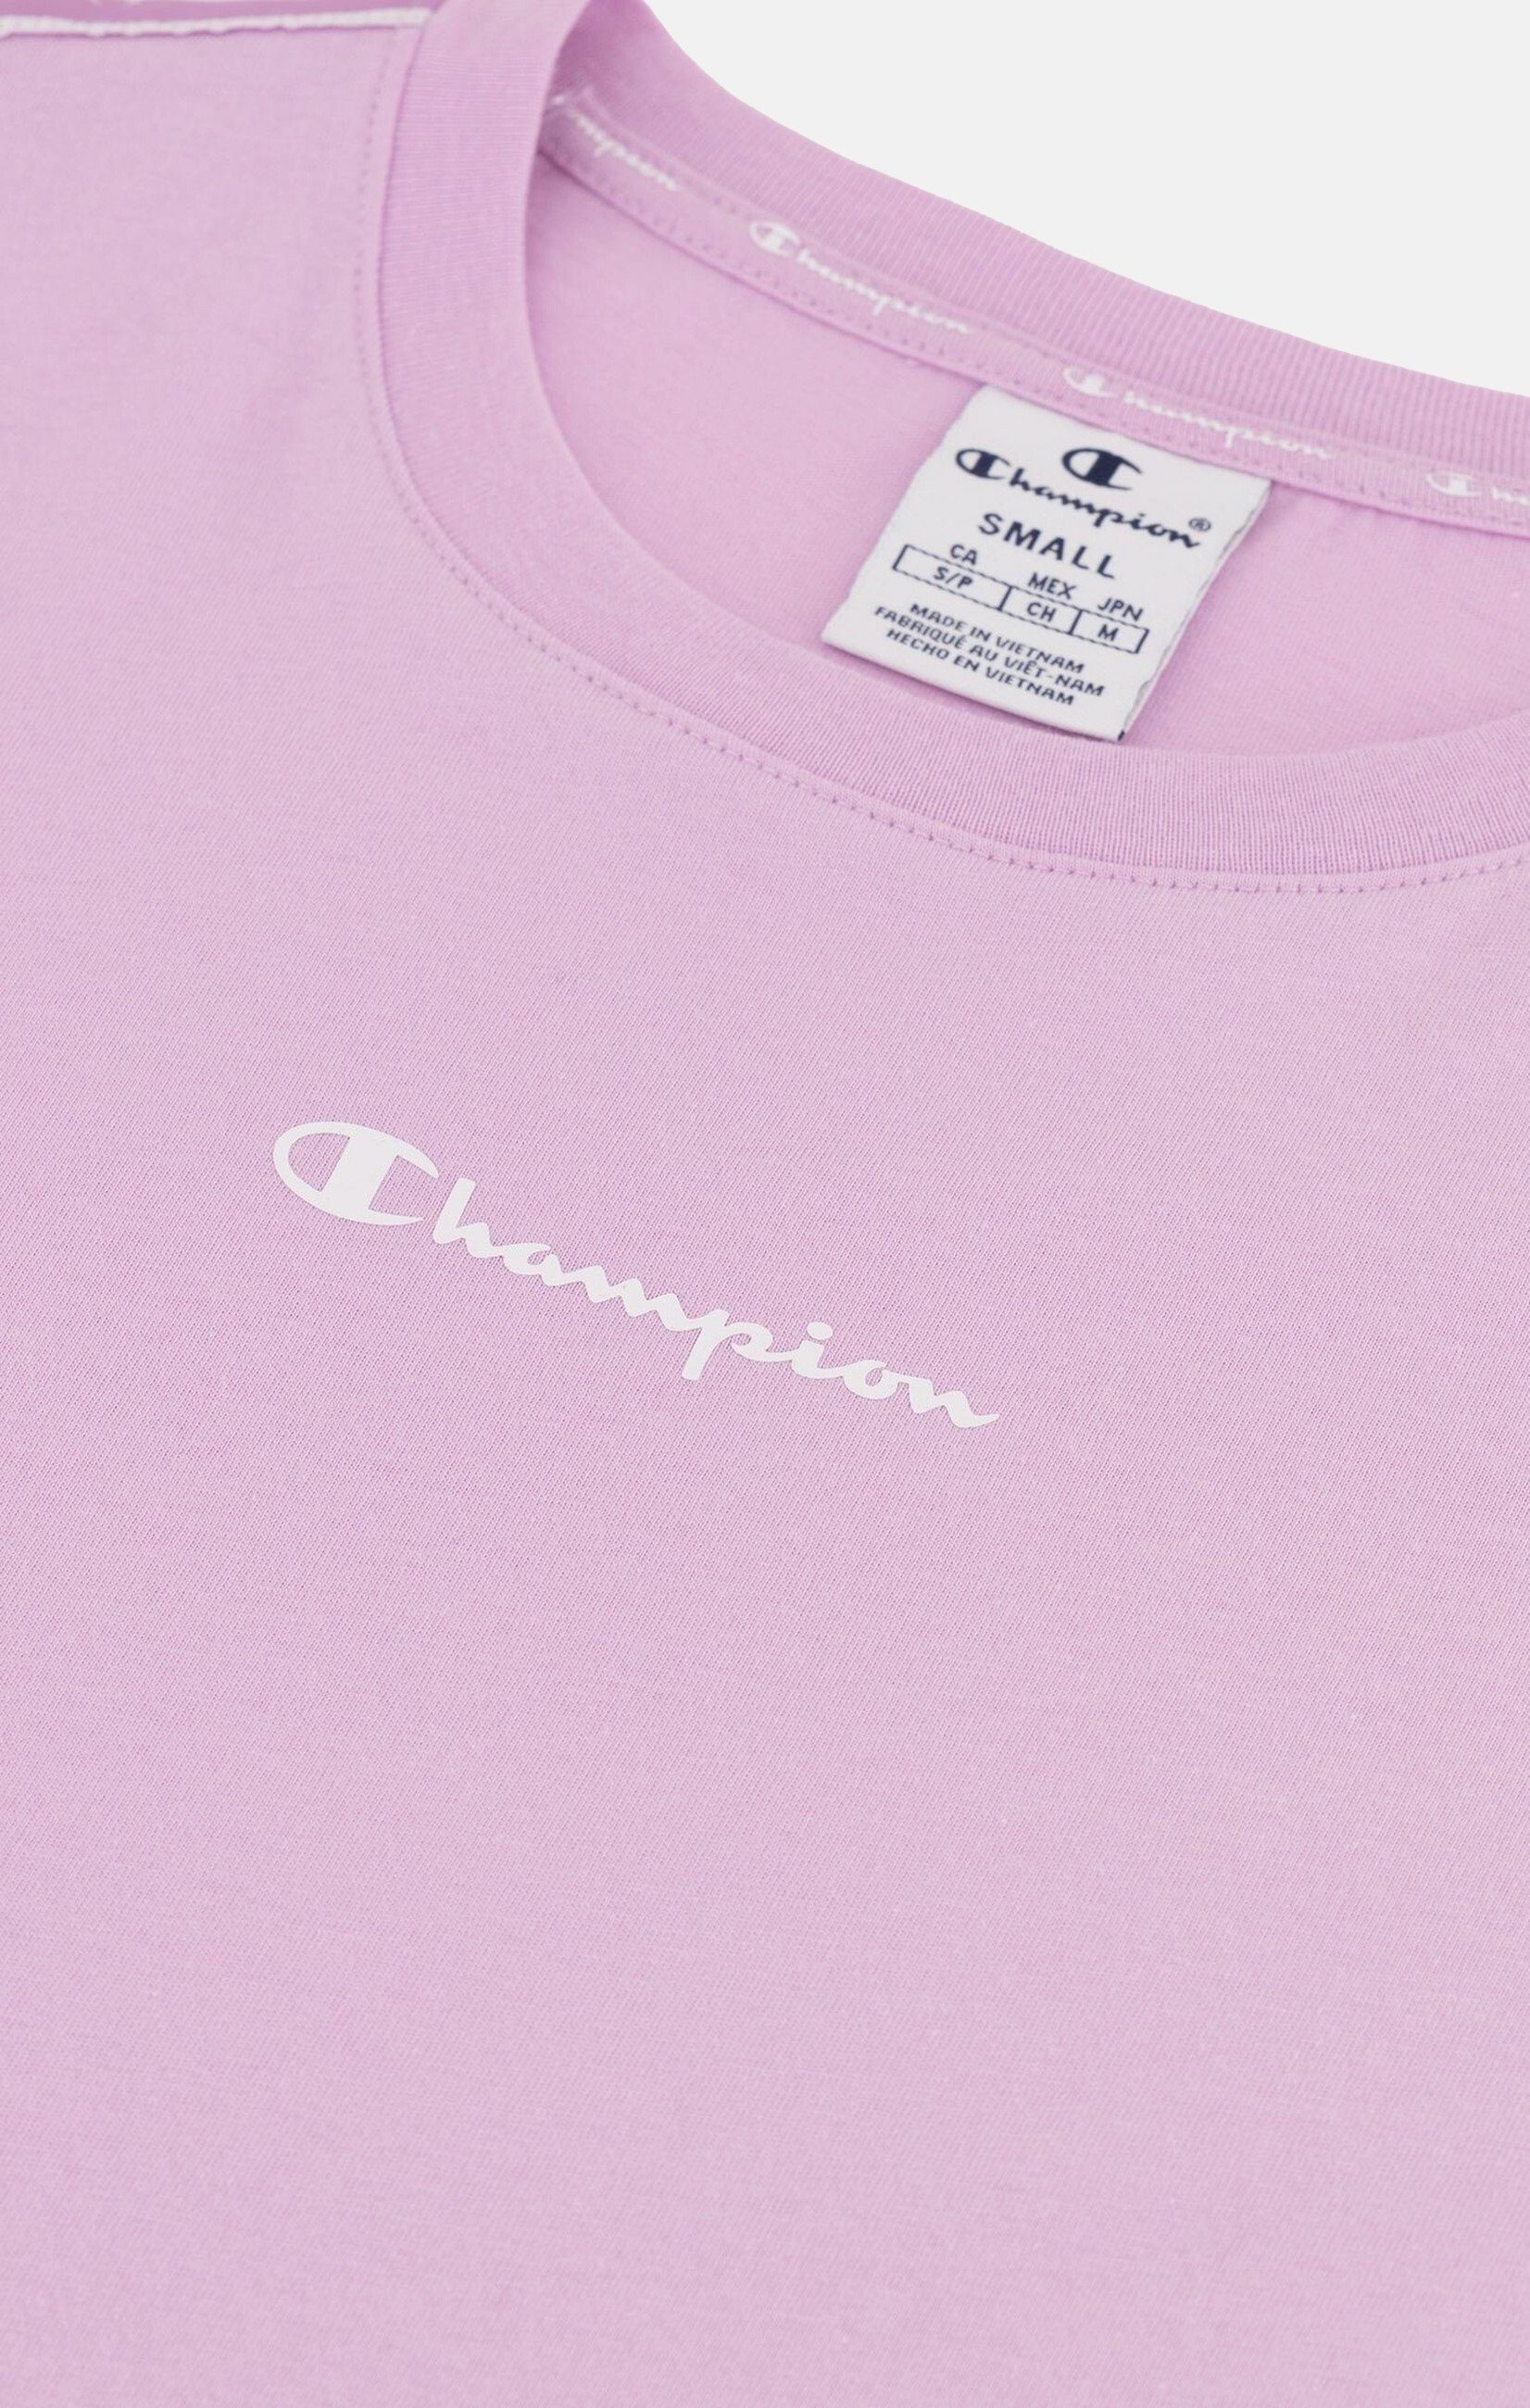 Champion T-Shirt Baumwolle pink mit Rundhals-T-Shirt aus Shirt